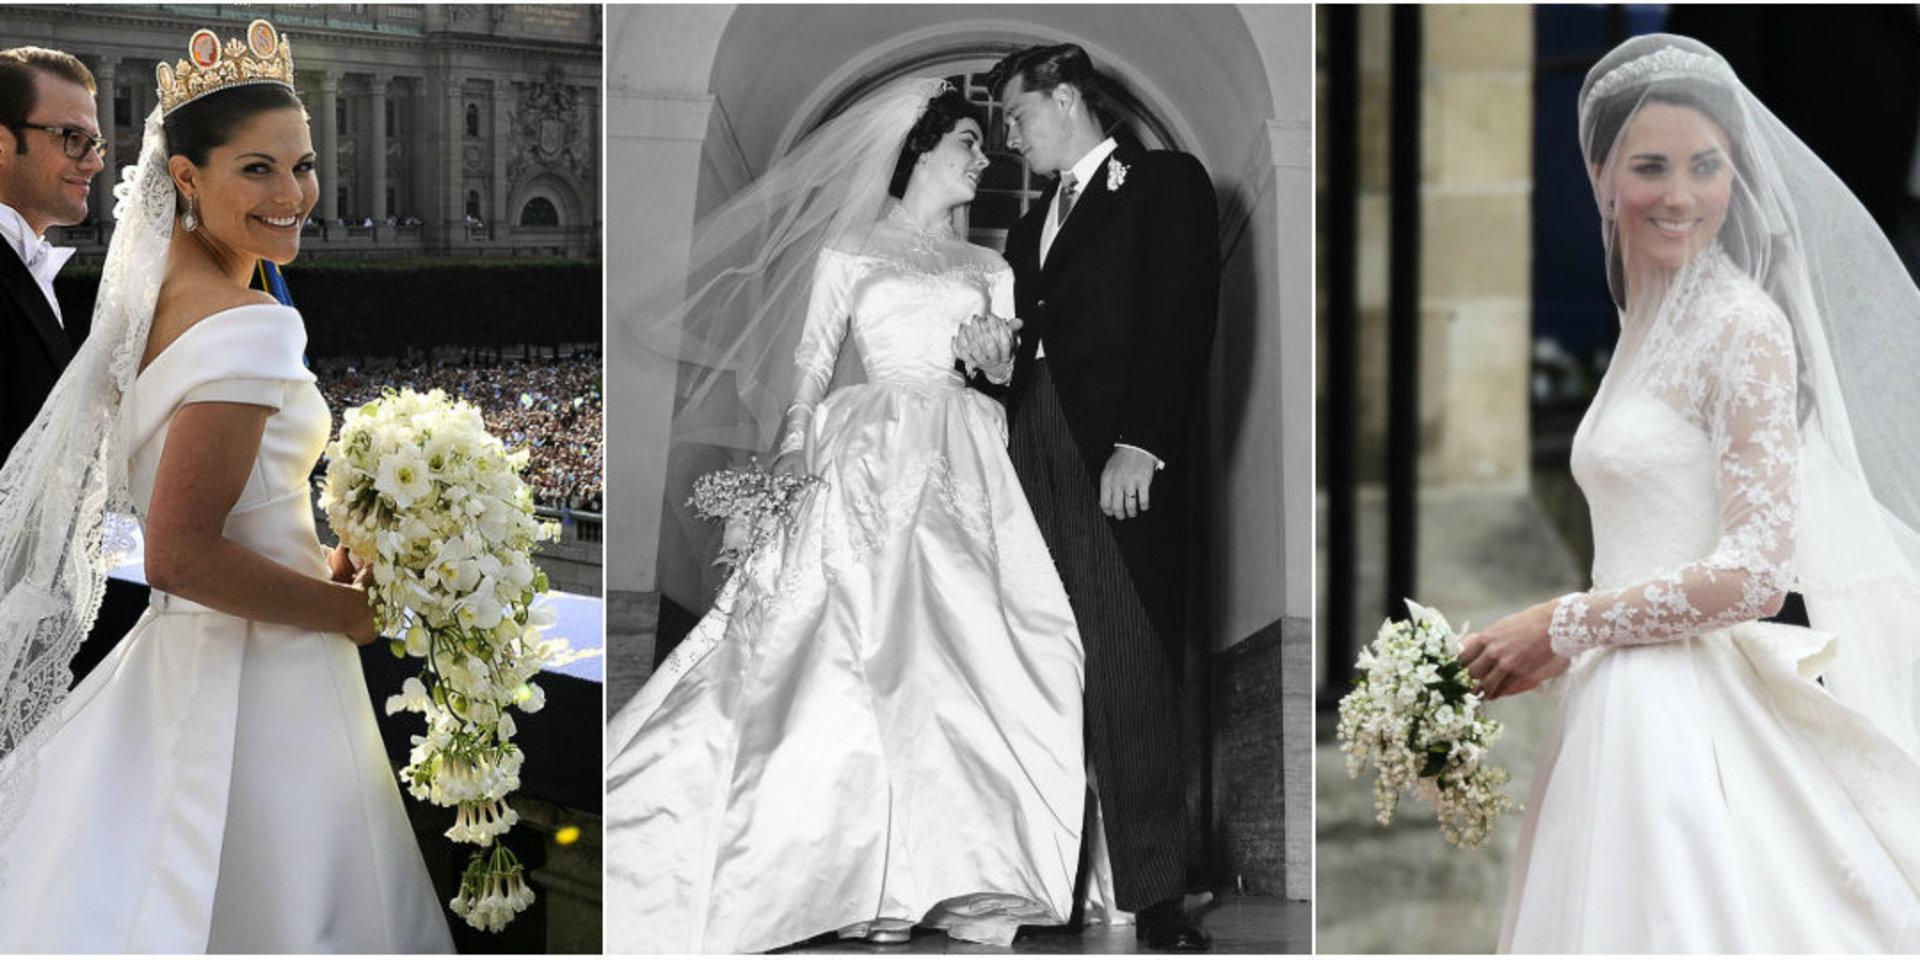 Prinsessan Victoria, Elizabeth Taylor och Kate Middleton i sina omtalade brudklänningar.